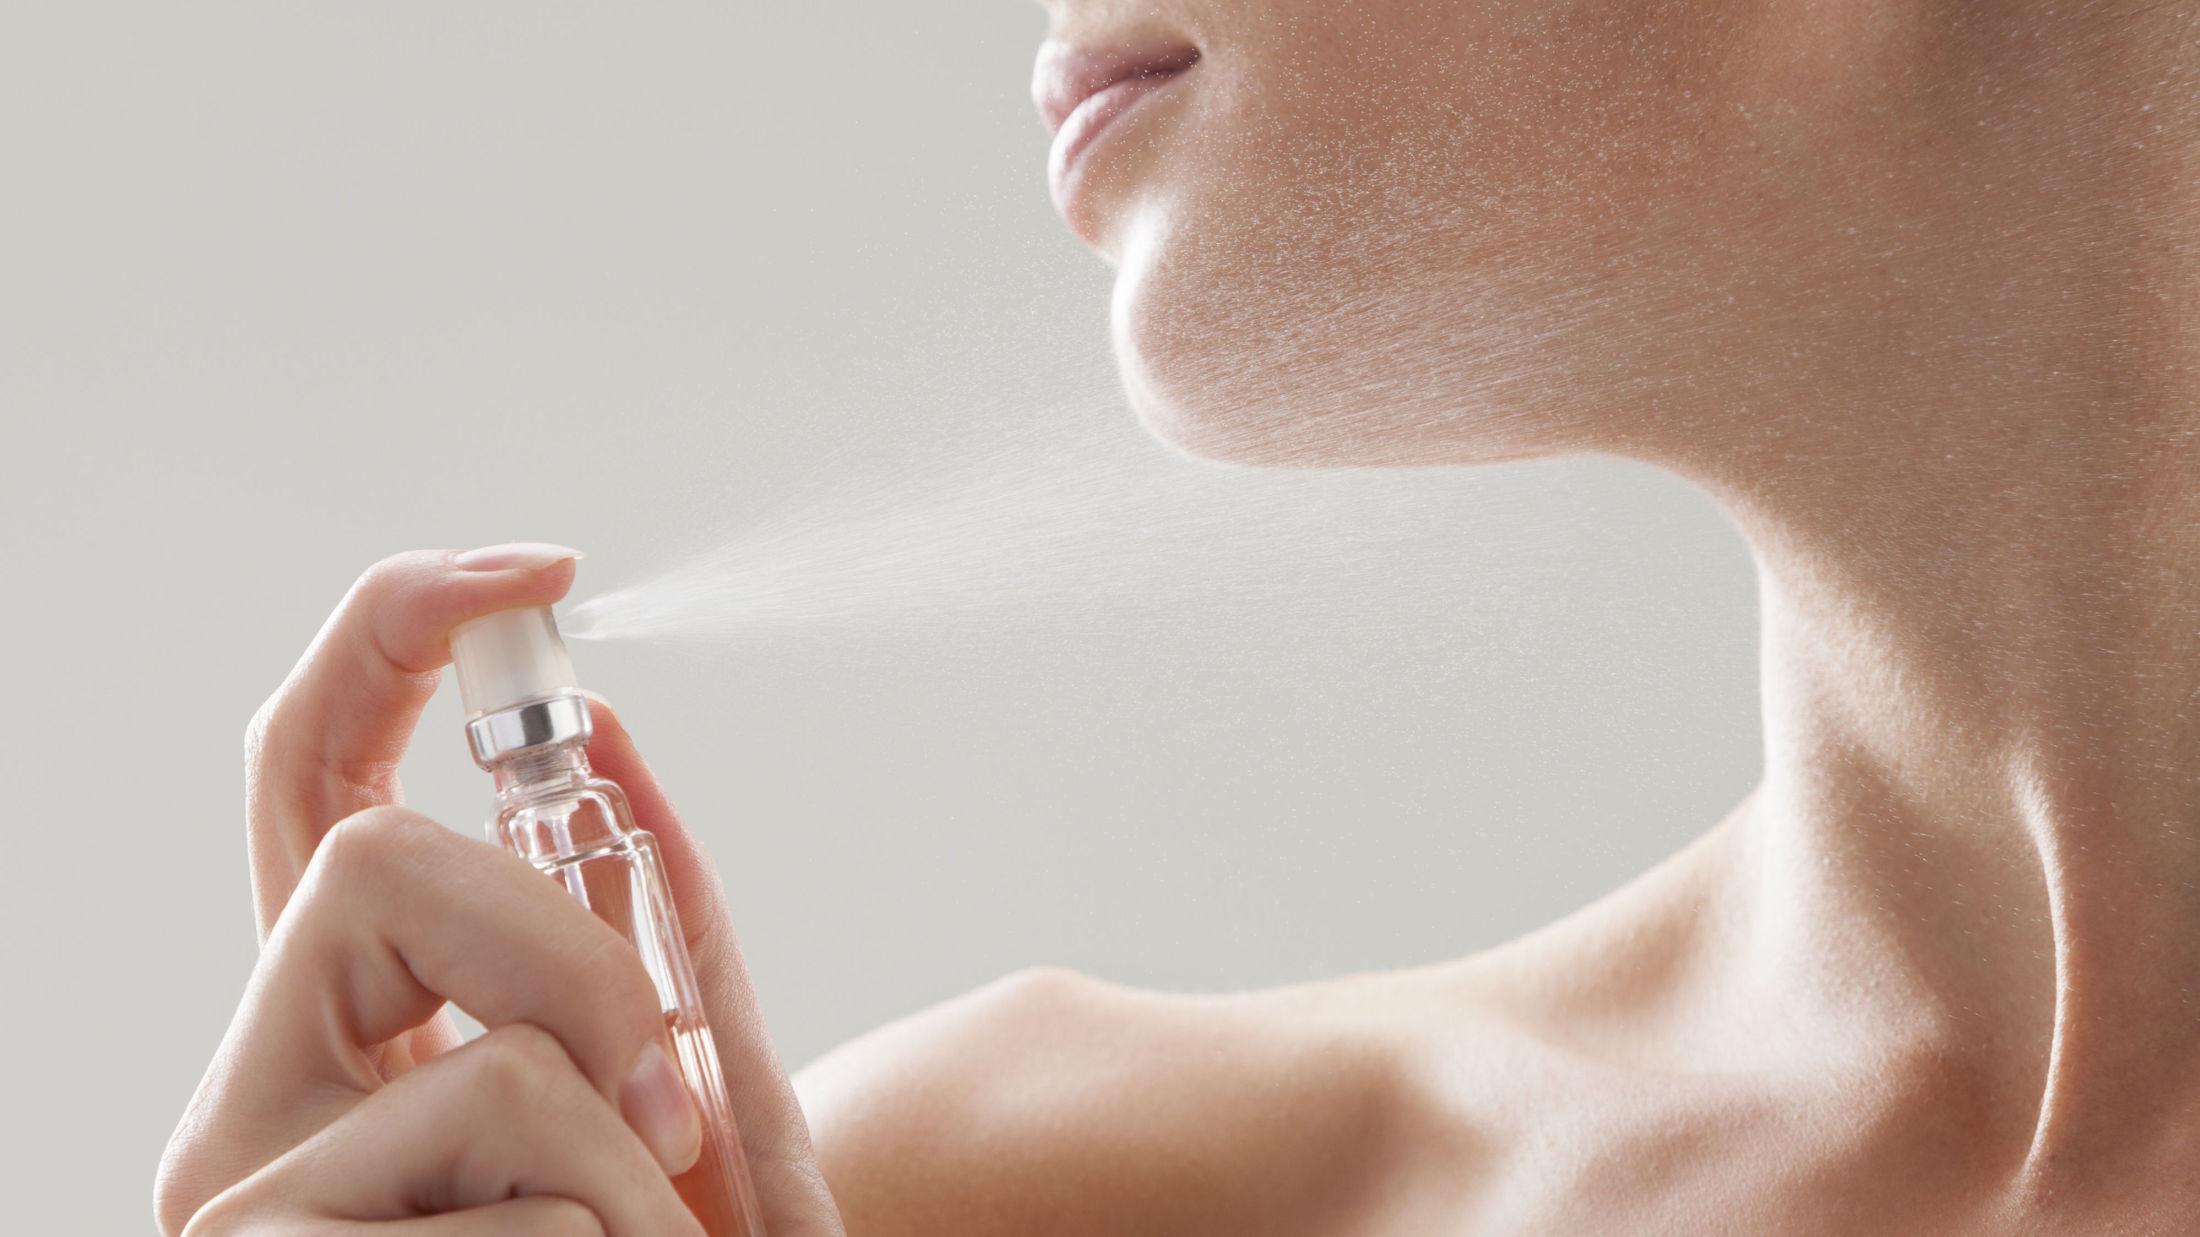 REGLER: Selv om parfymen din lukter godt, skal du ikke spraye mer enn én eller to ganger. Foto: Getty Images